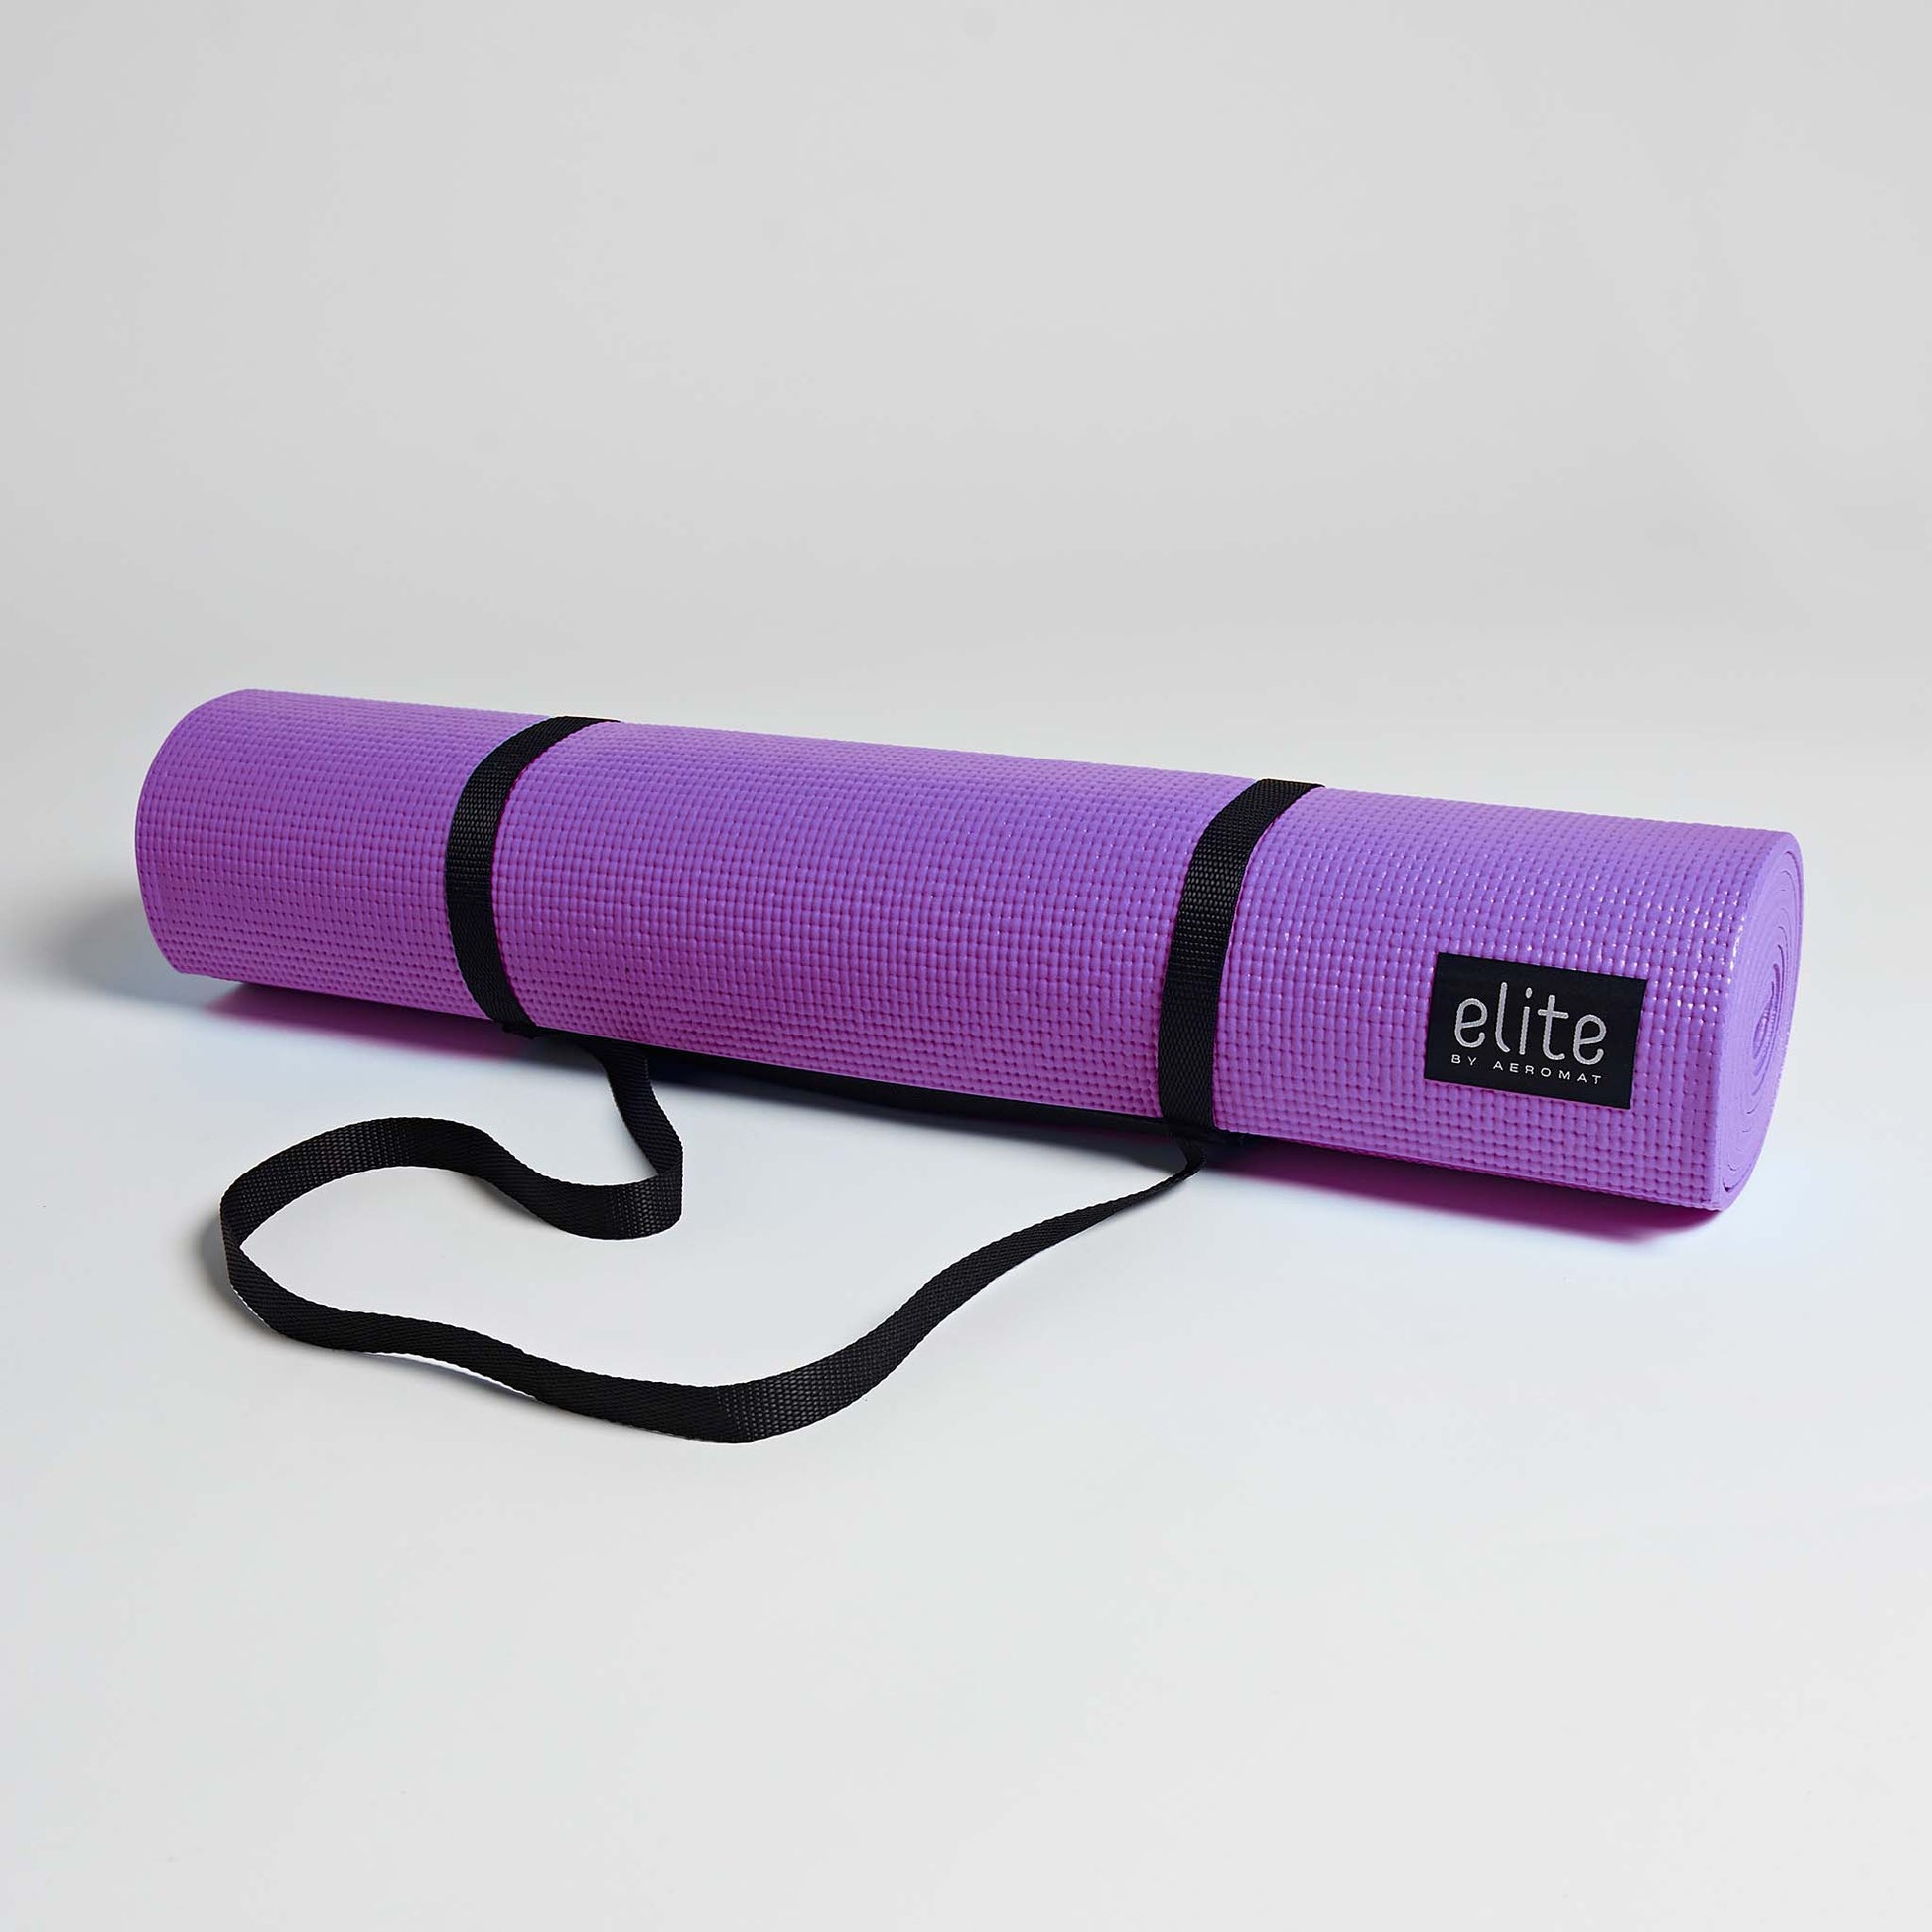 Thick Yoga Mat - Balanced Body Aeromat - Pilates Mat